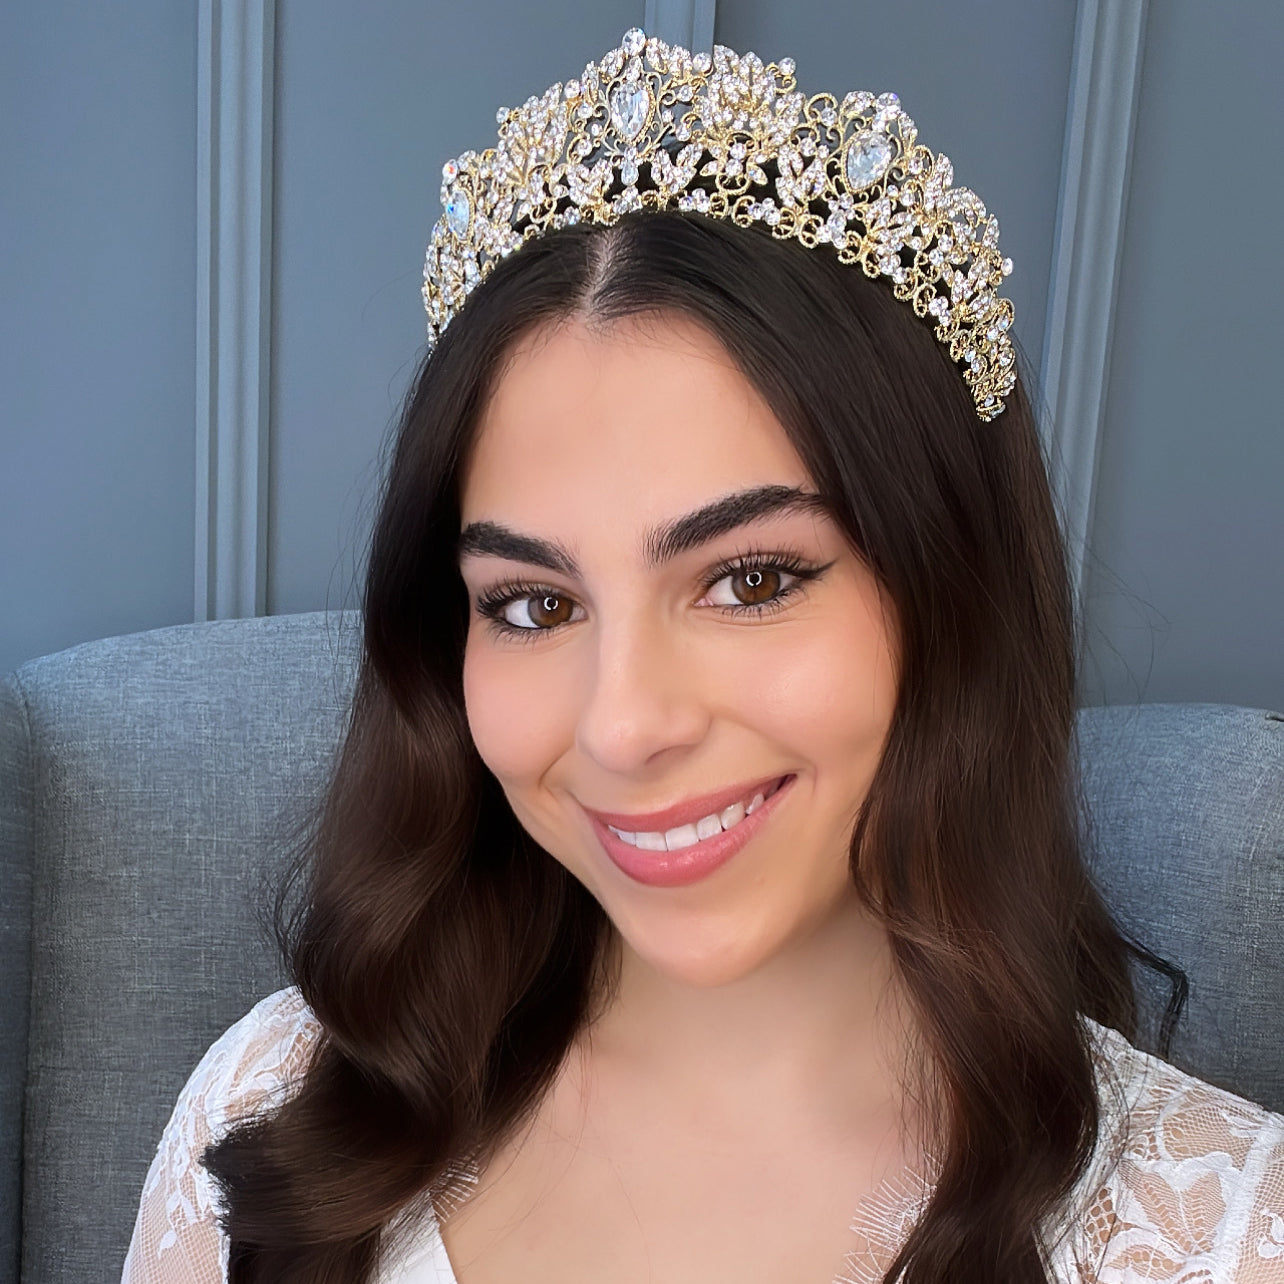 Luciana Bridal Crown (Gold) Hair Accessories - Tiara & Crown    